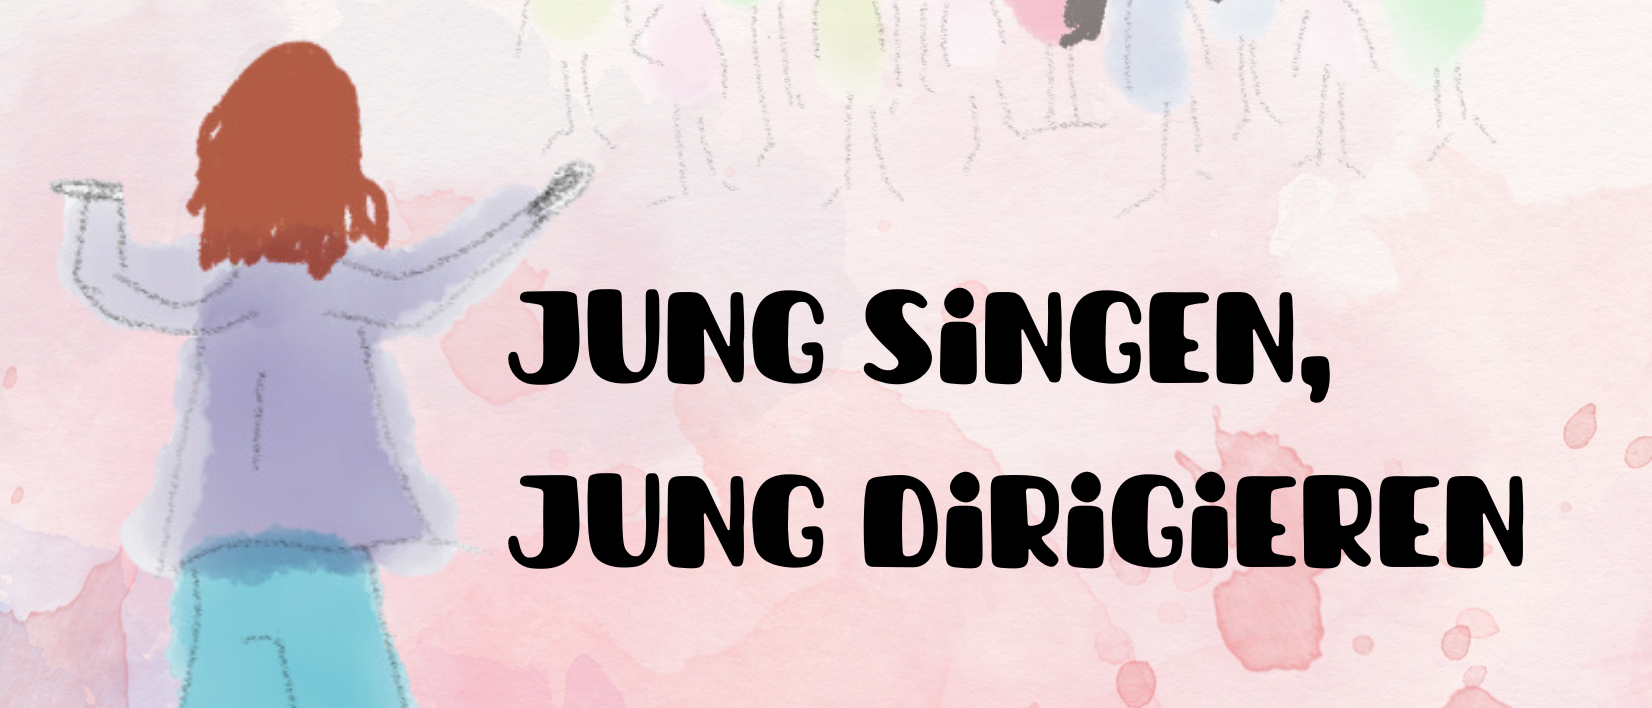 Jung singen-dirigieren